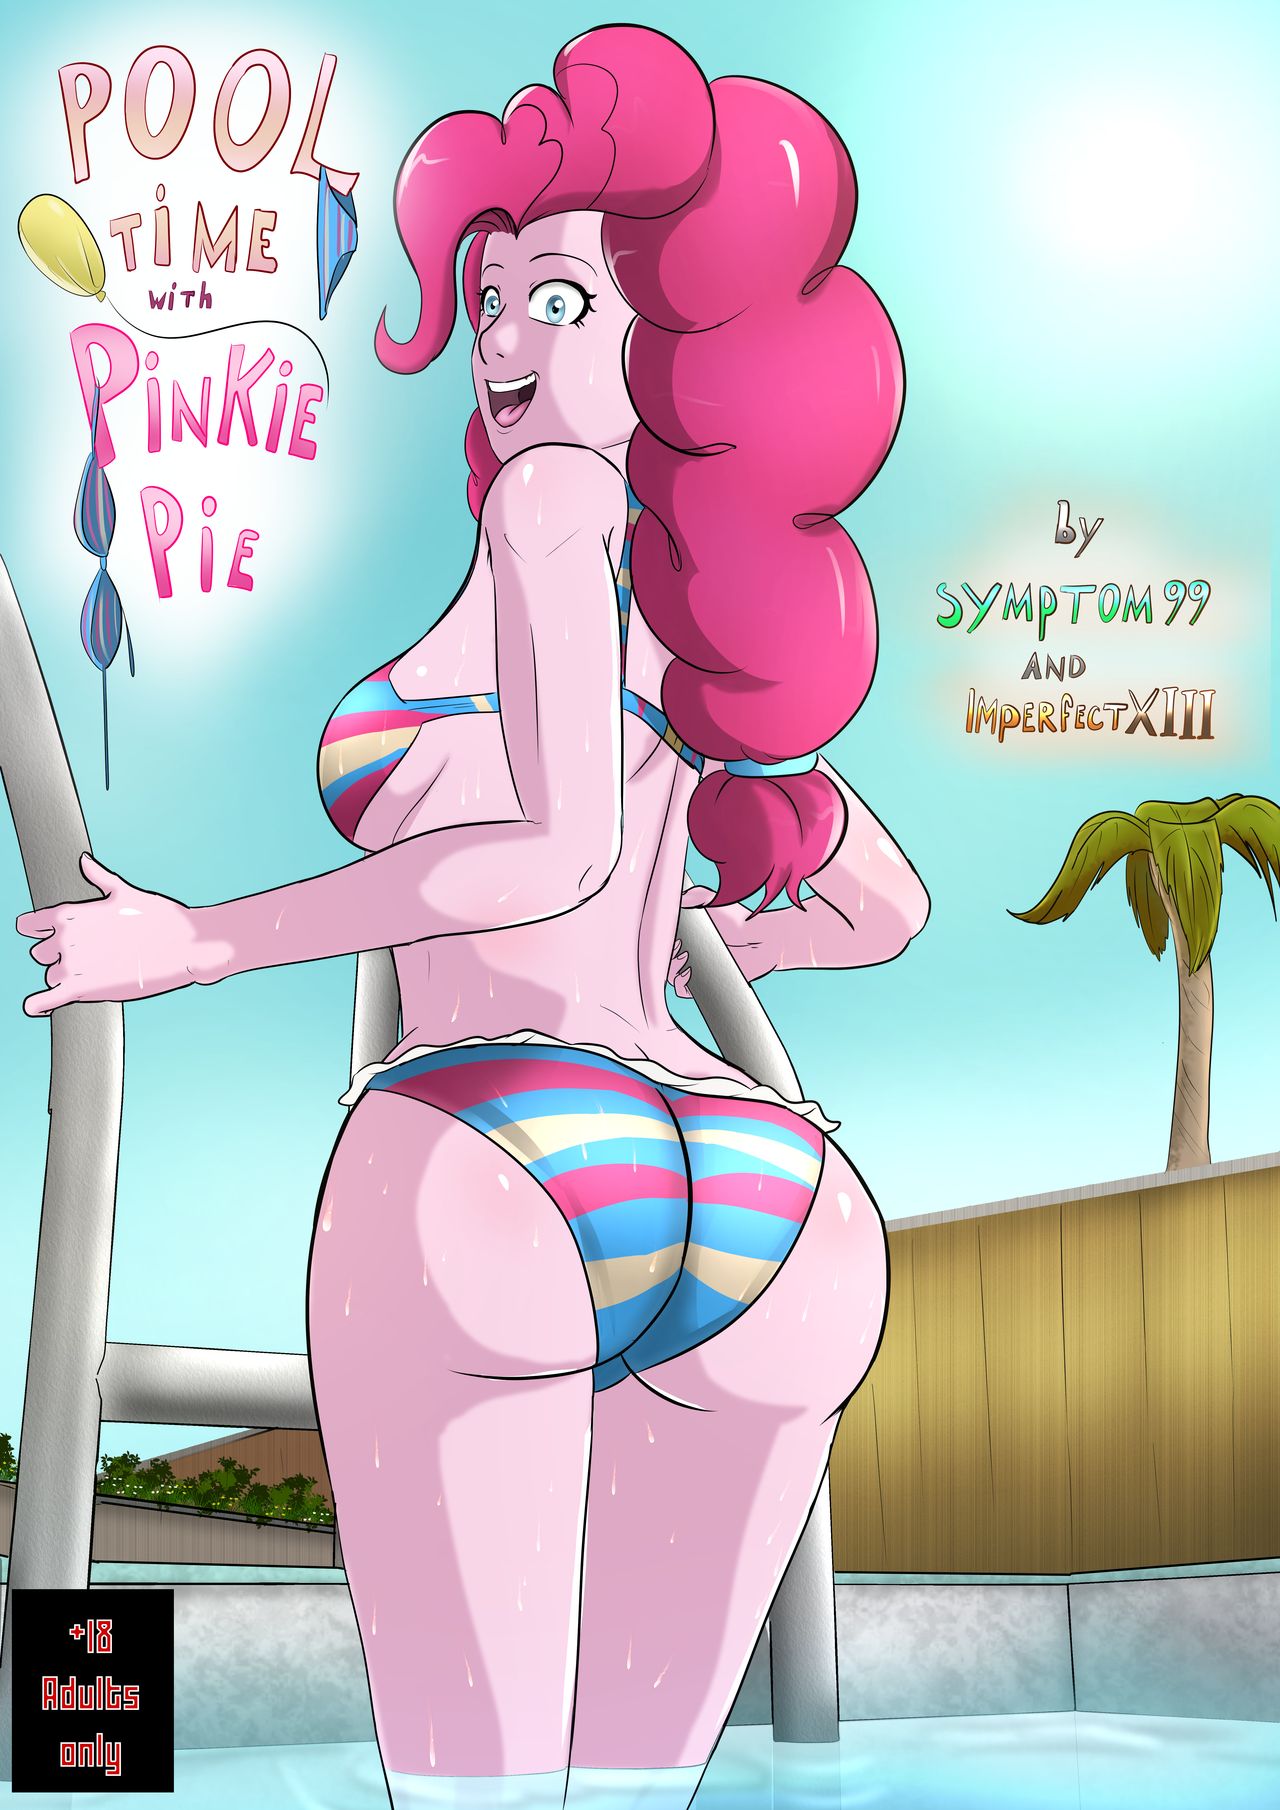 Mlp Pinkie Pie Furry Porn - Free Comix Pool Time with Pinkie Pie (My little pony)  Symptom99/ImperfectXIII - FreeAdultComix